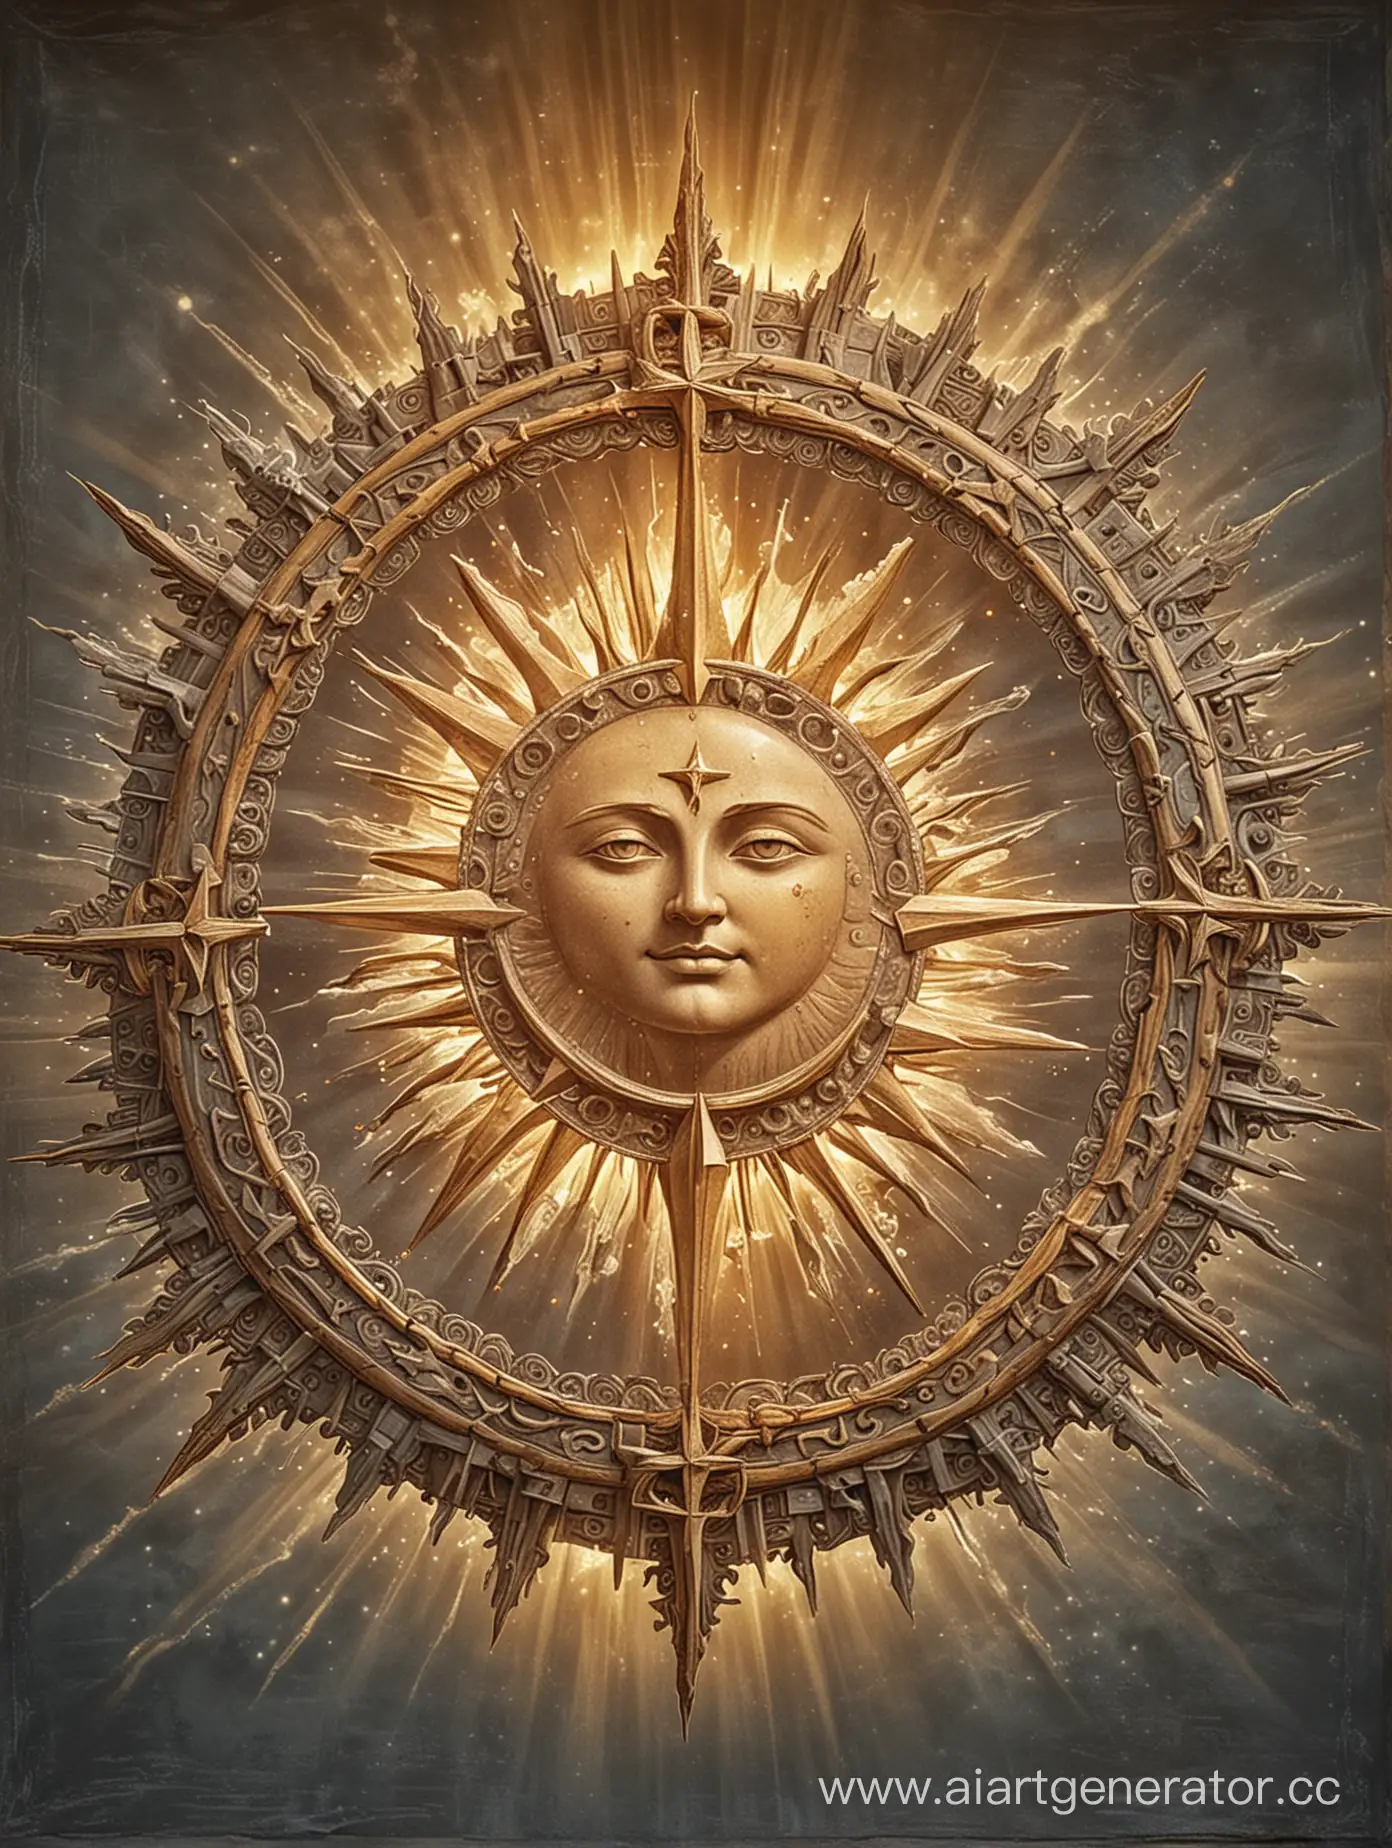 Славянское солнце с отдельными 8ми лучами, а между ними 8 звёзд. Внутренни по контуру солнца вписан месяц